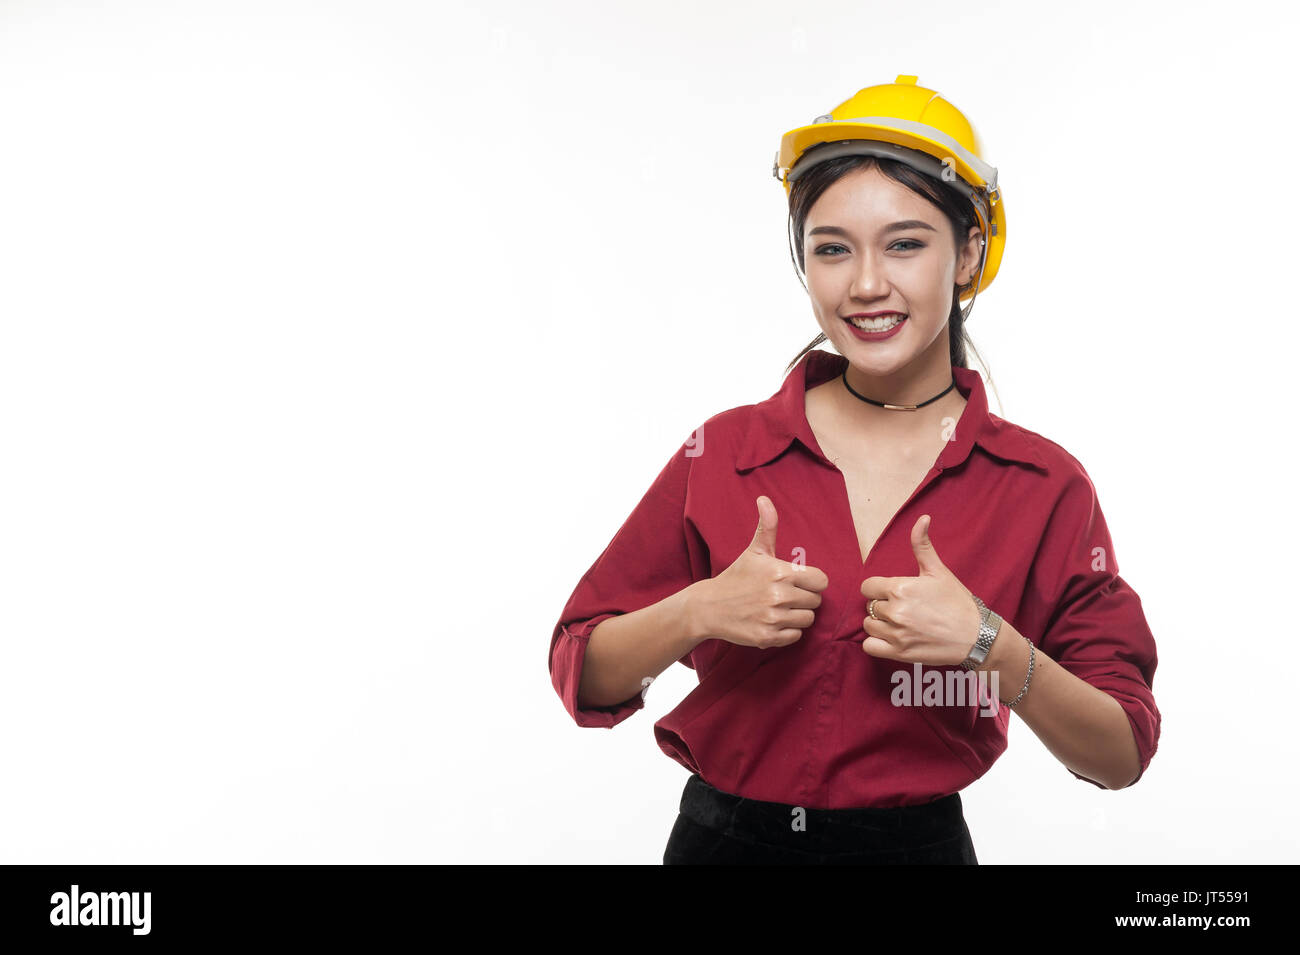 Asiatische Frau Ingenieur im roten Hemd und gelben Safety Cap mit Daumen hoch. Leute Gestik im Geschäft und enginerring Konzept Stockfoto